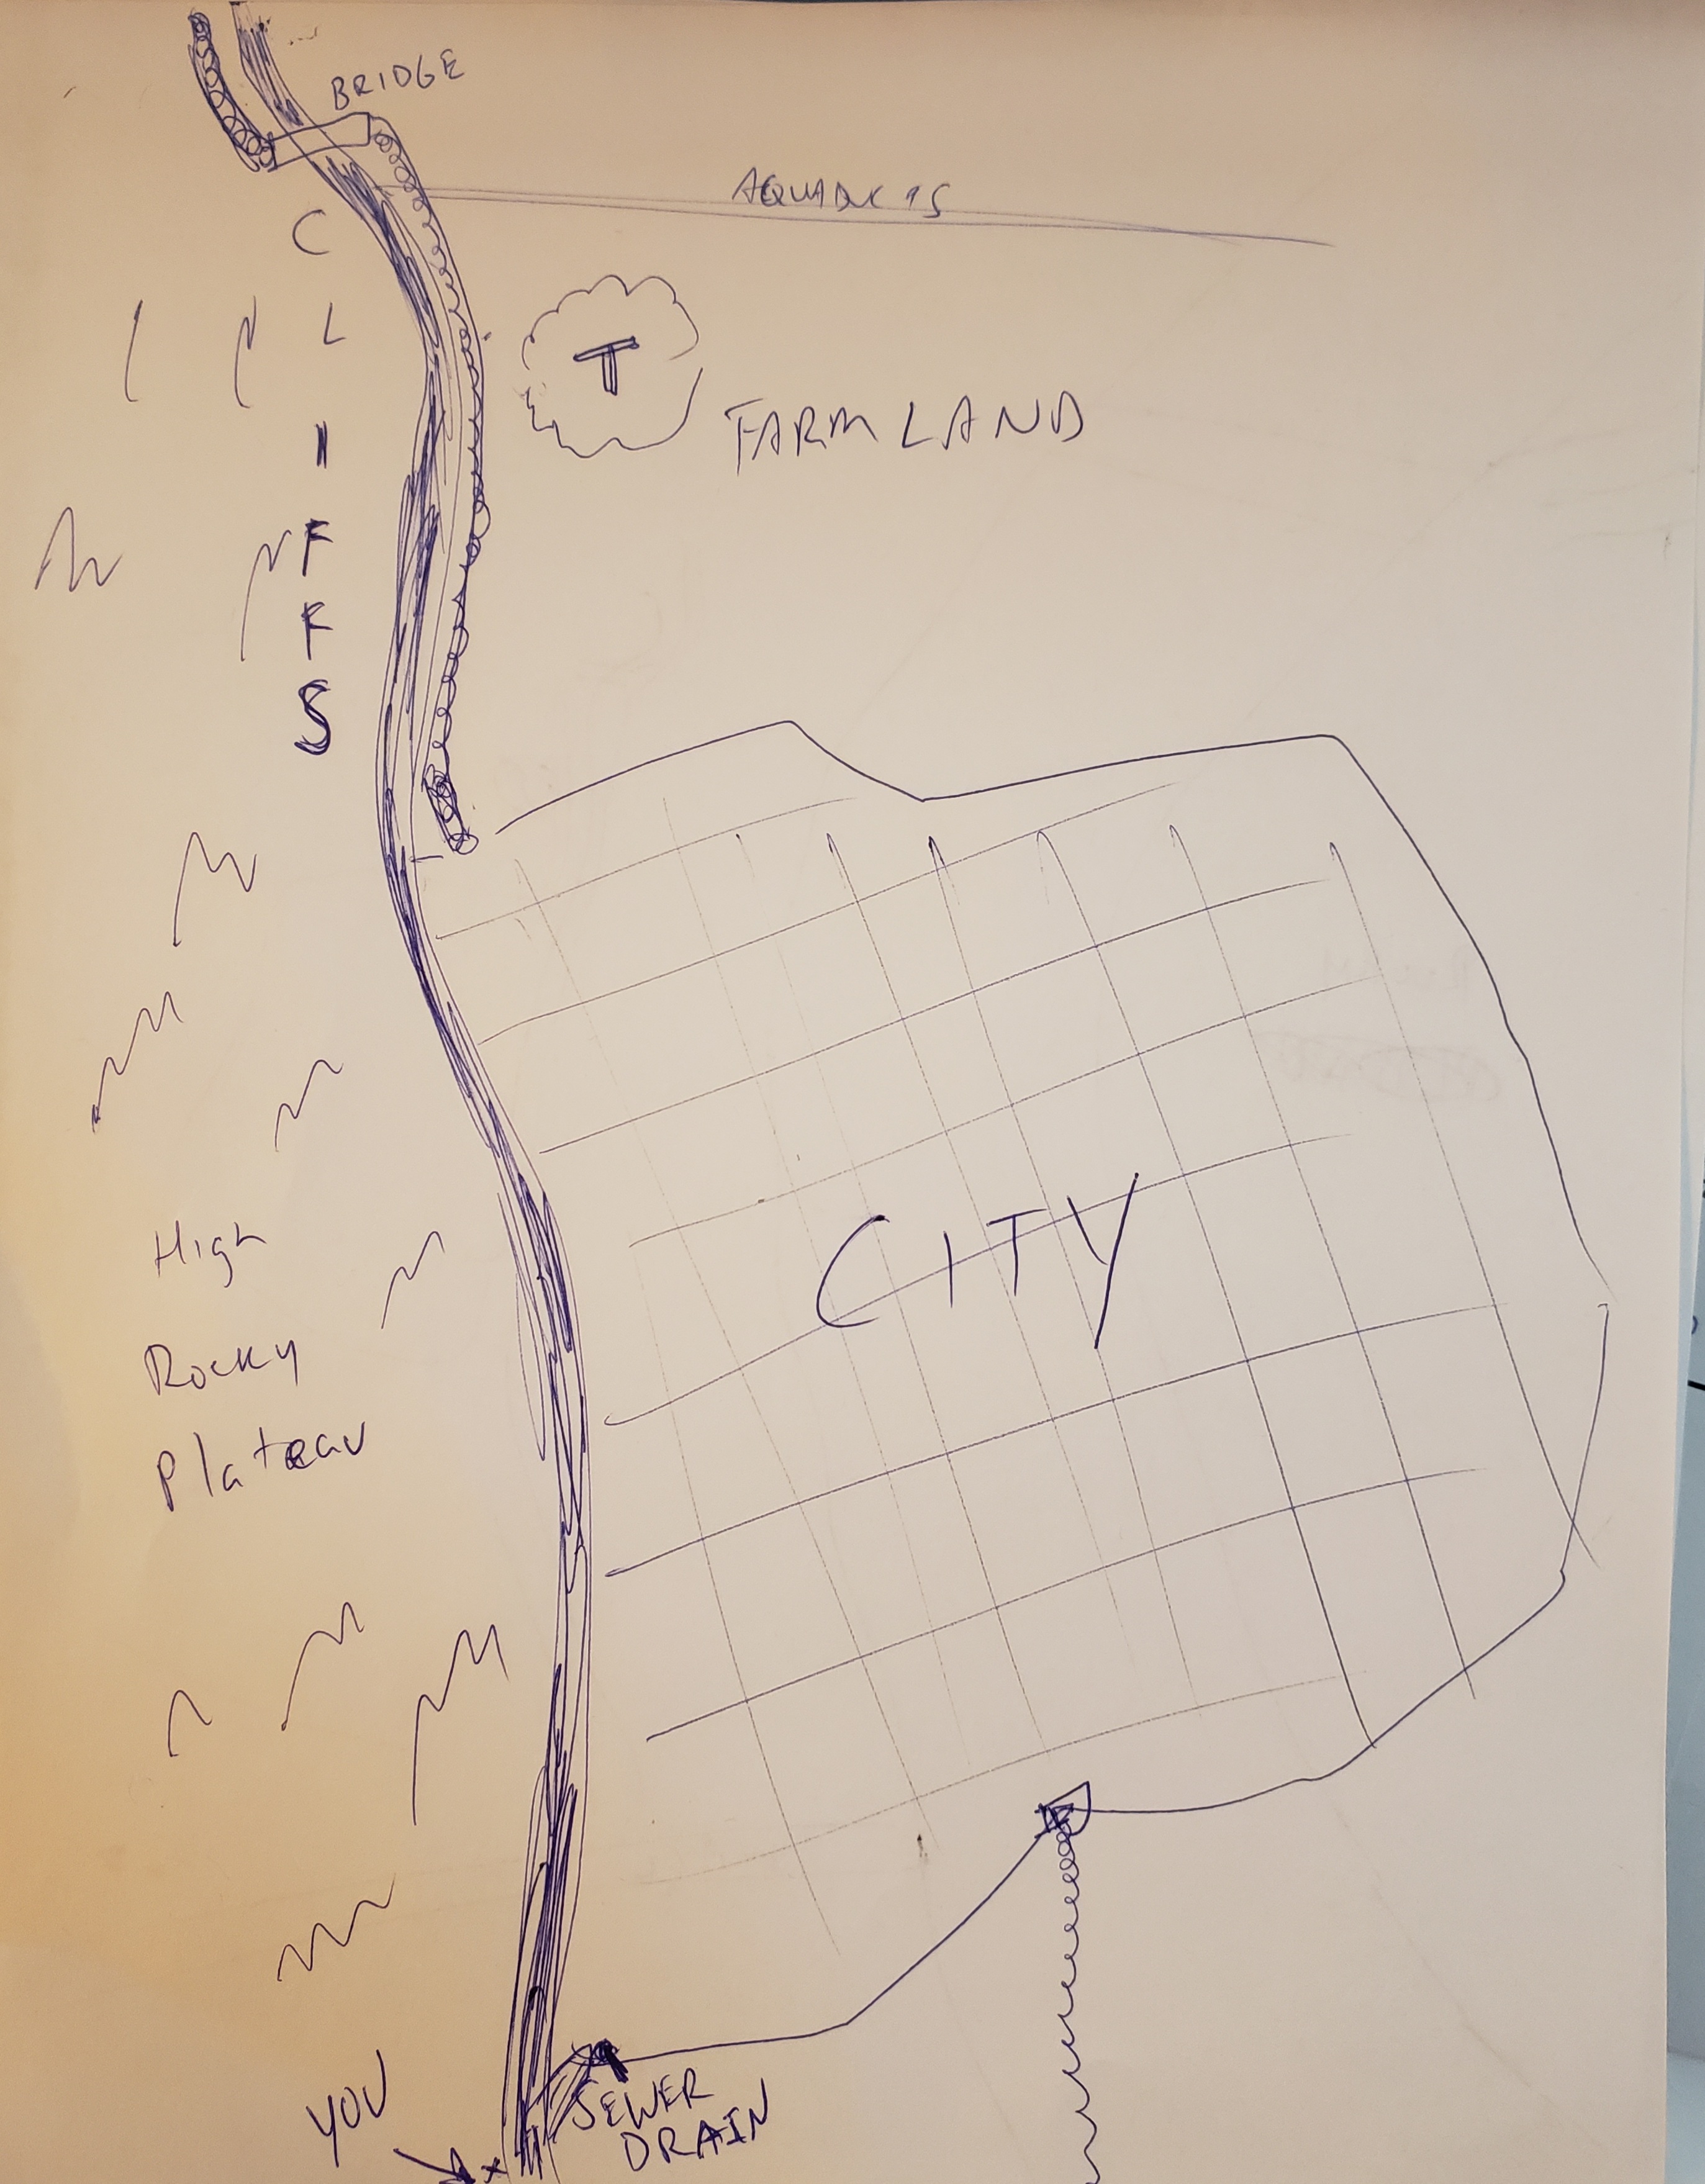 File:Chun-ki-city-layout.jpg